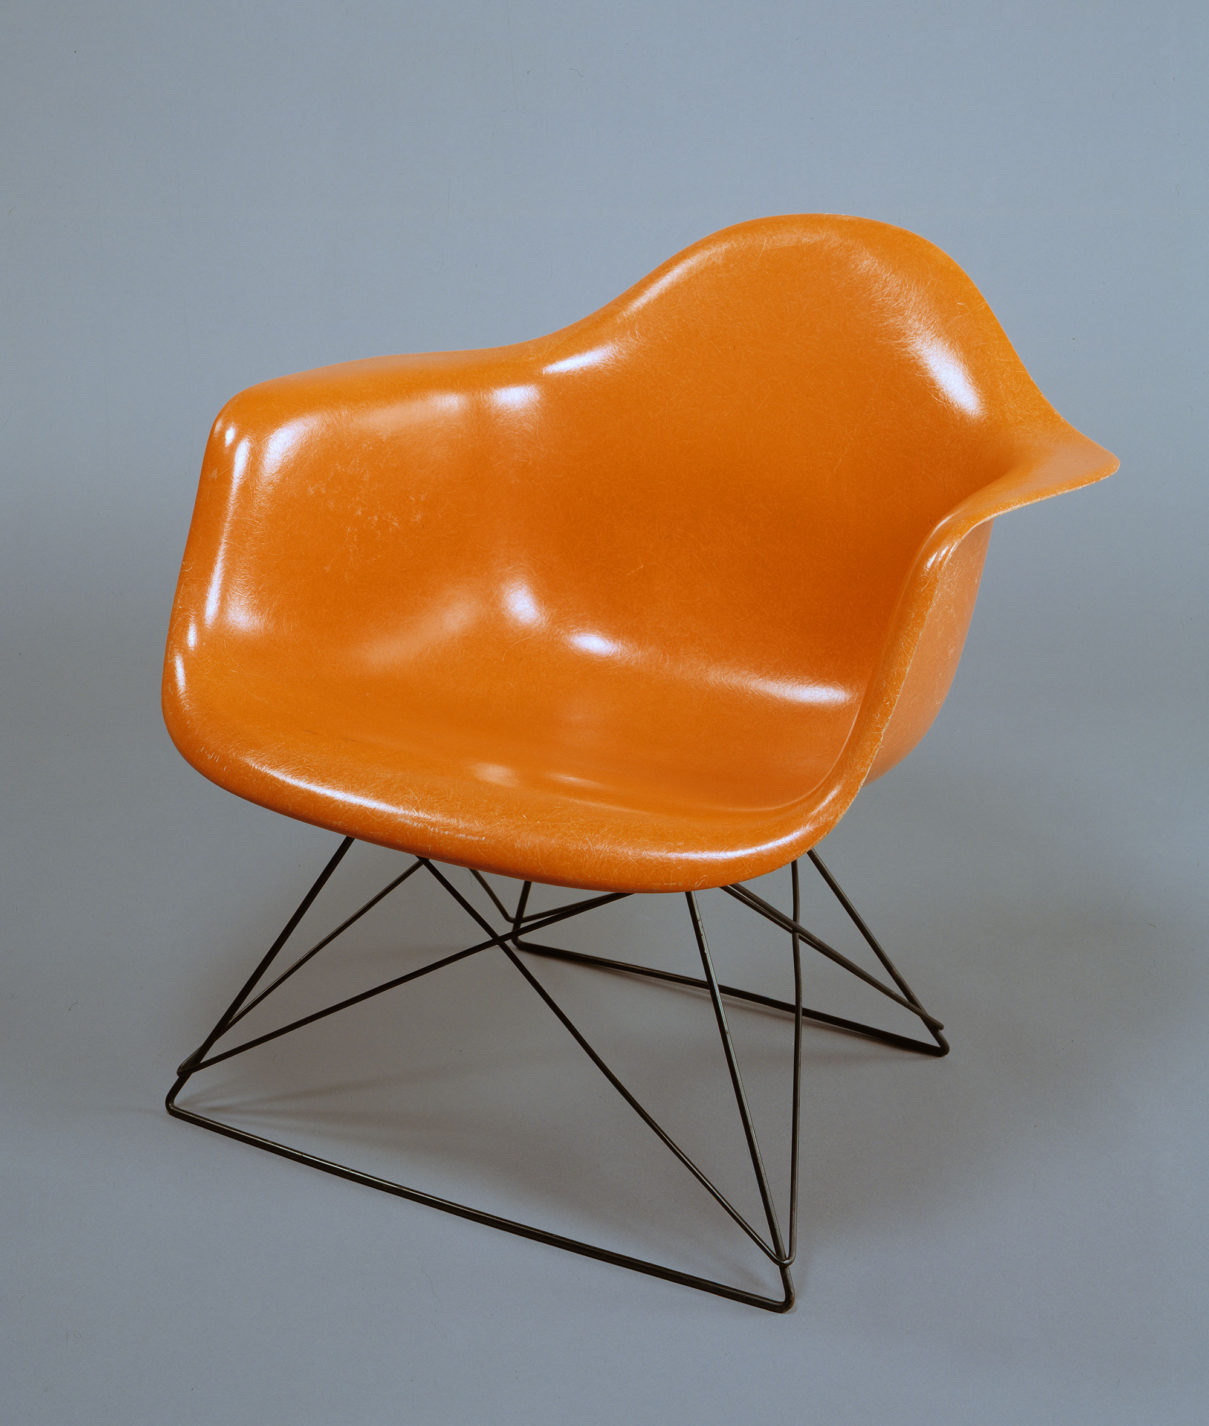 Grand fauteuil à coquille moulée en fibre de verre orange à base de métal noir croisée.